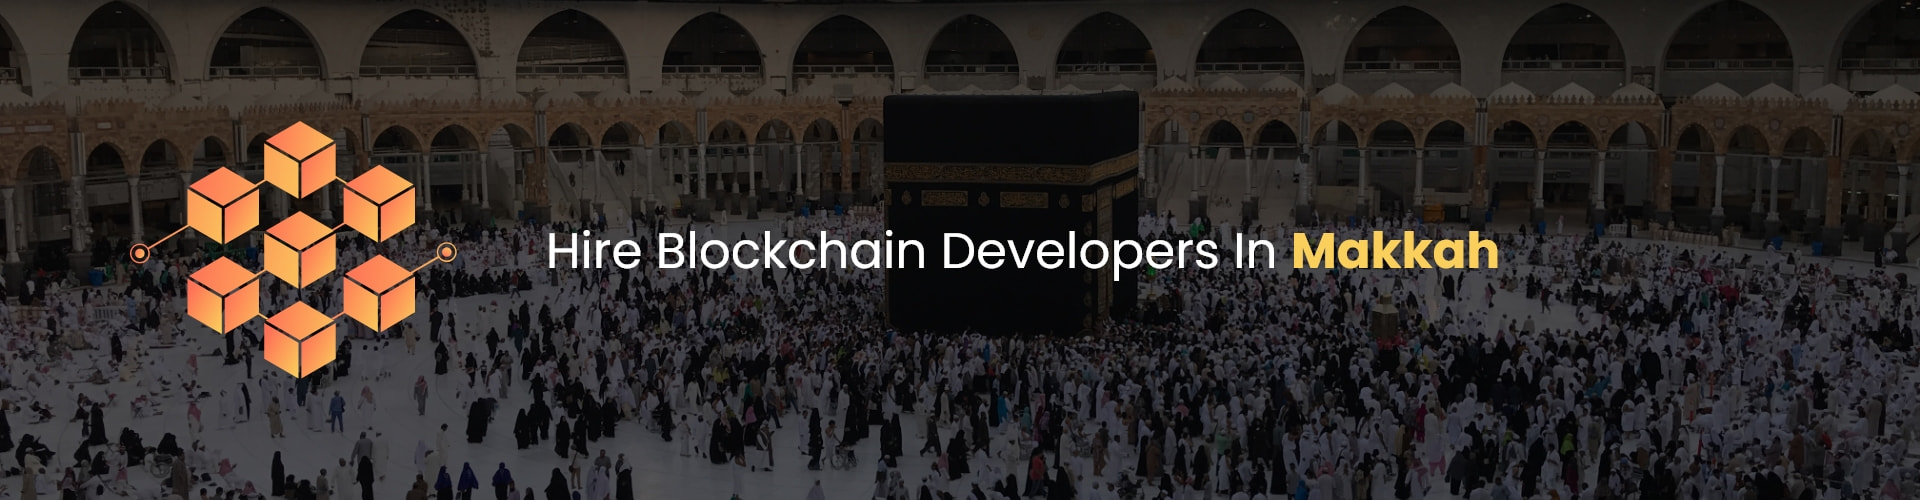 hire blockchain developers in makkah